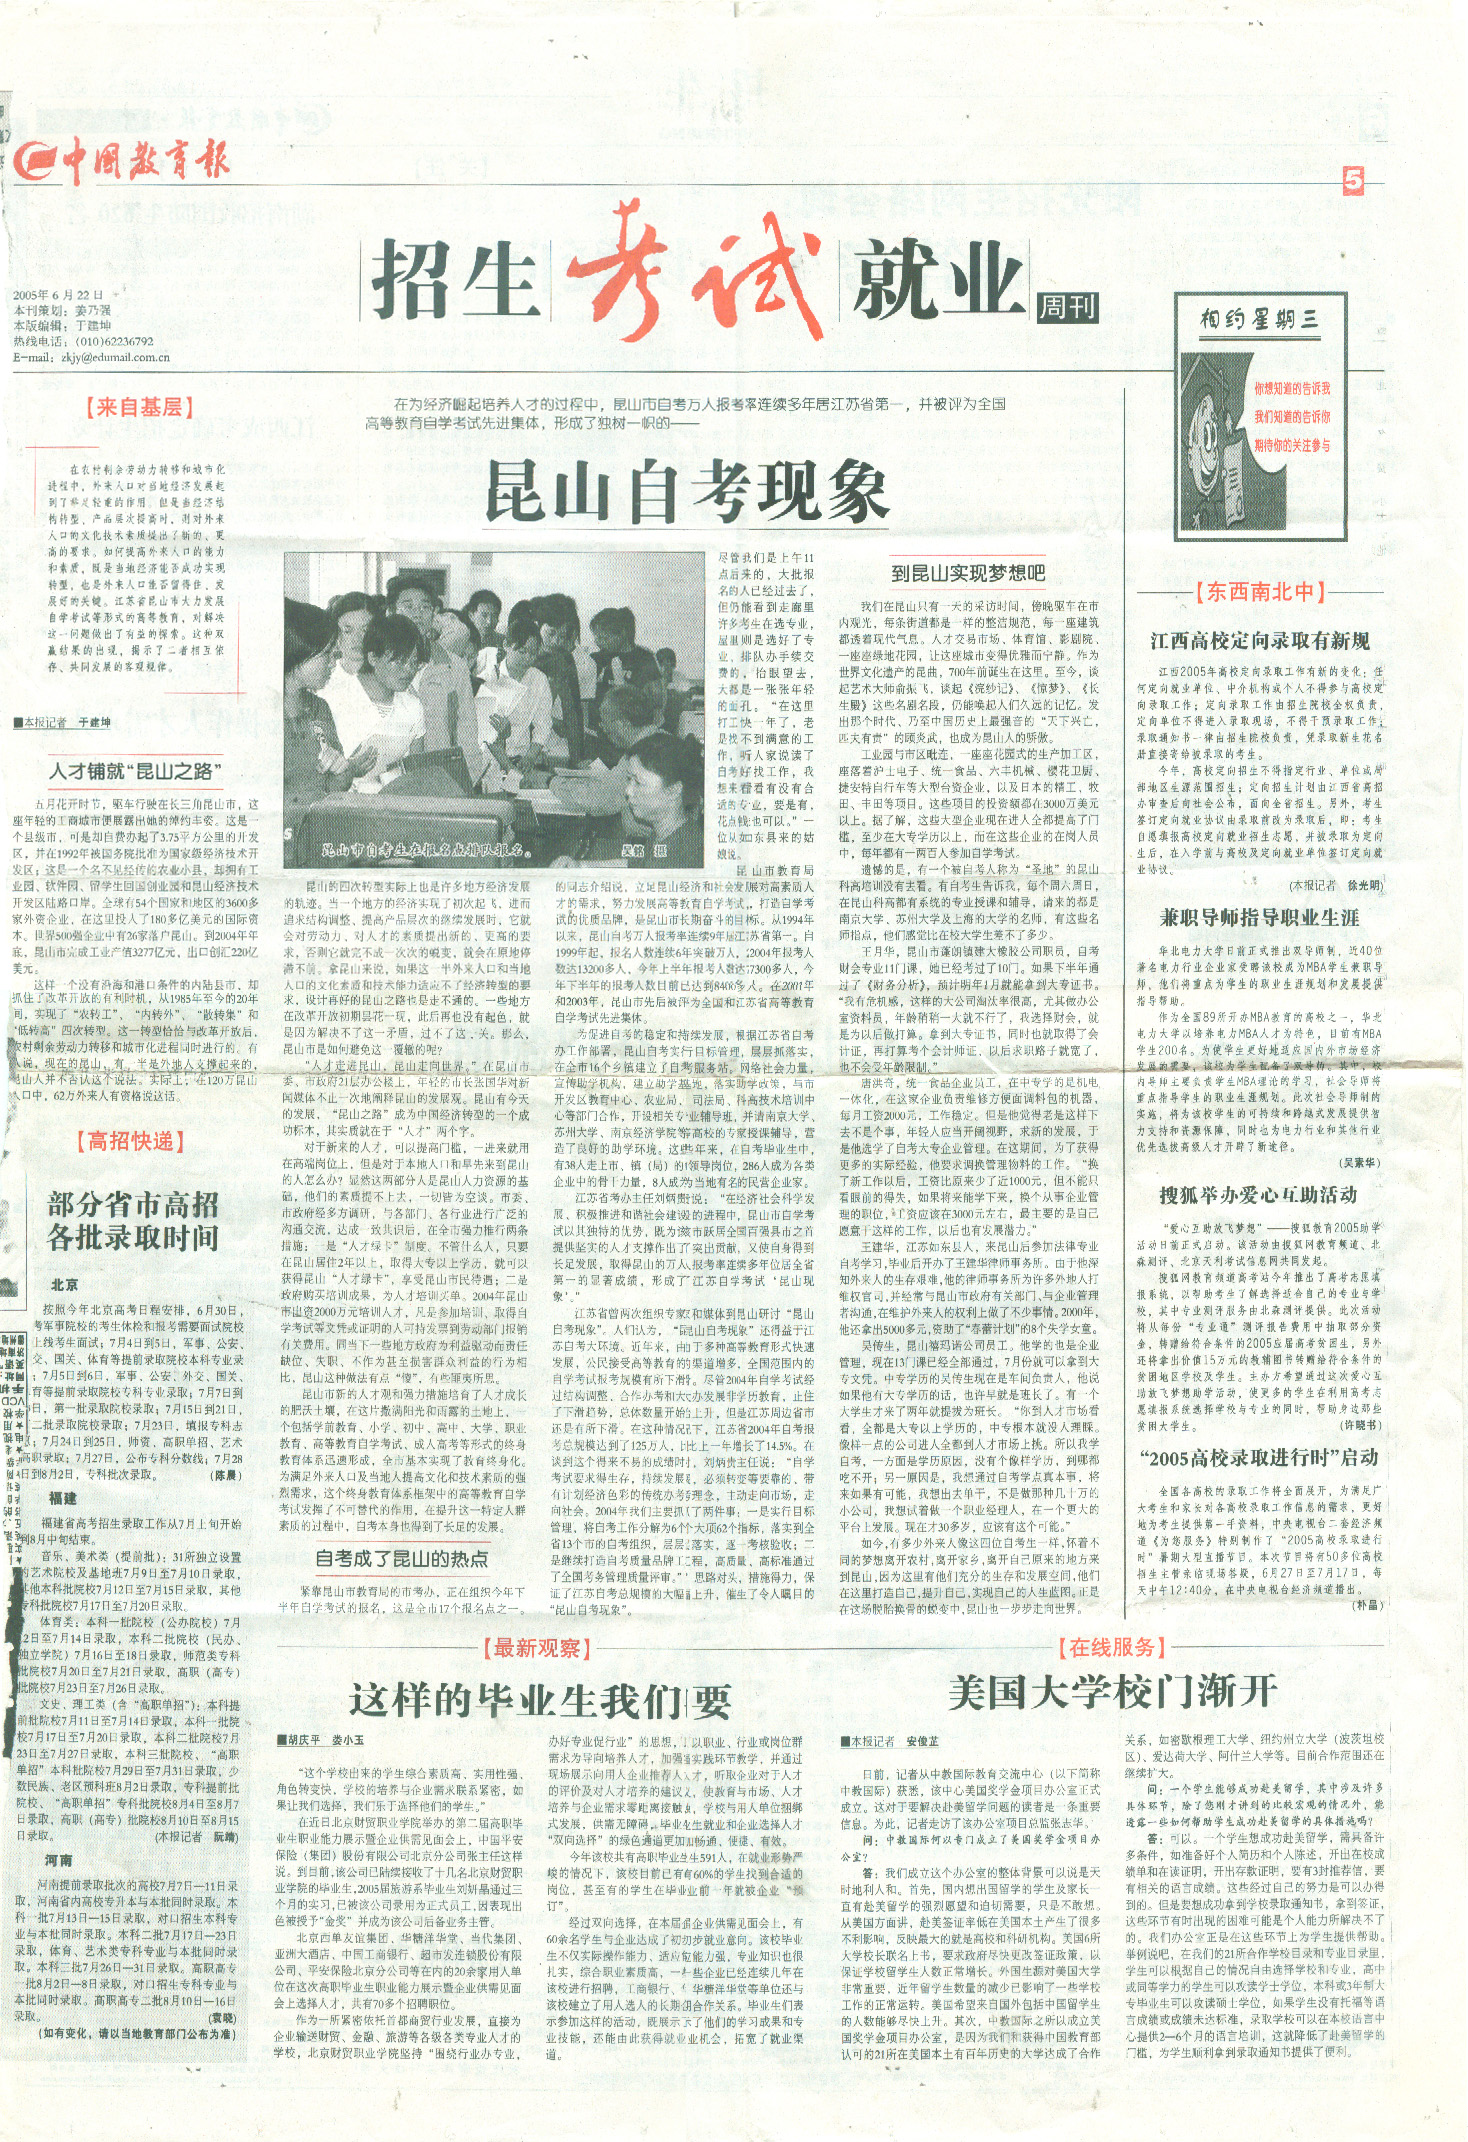 2005年中国教育报报道的昆山自考现象文章介绍科高助学 